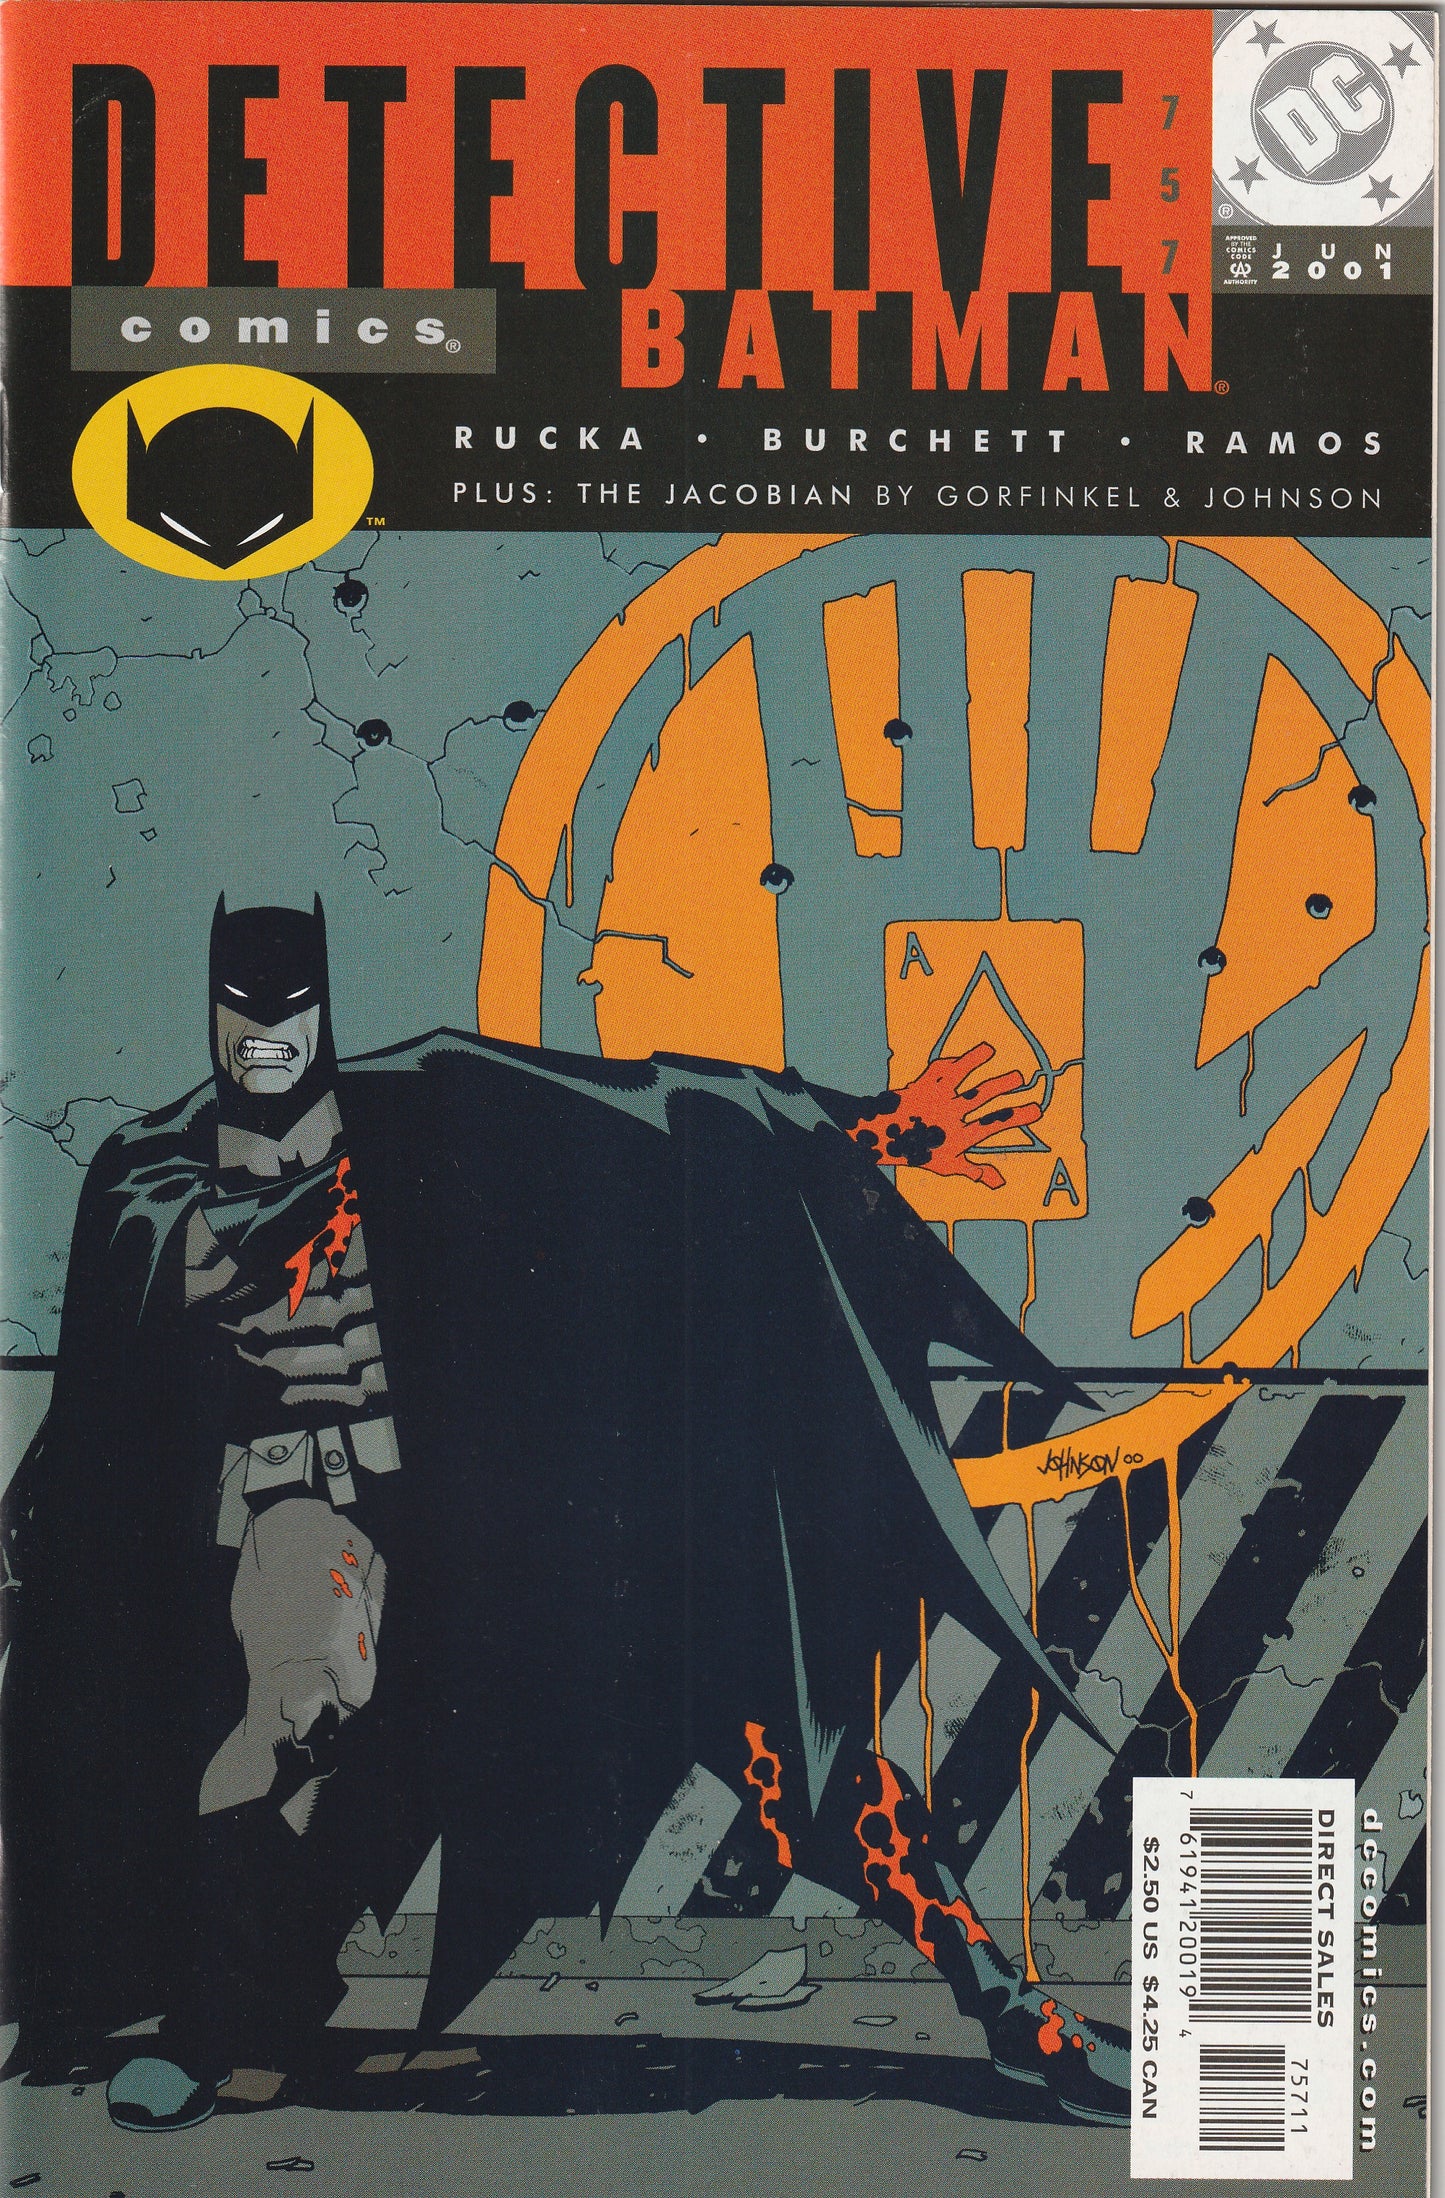 Detective Comics #757 (2001) - Greg Rucka